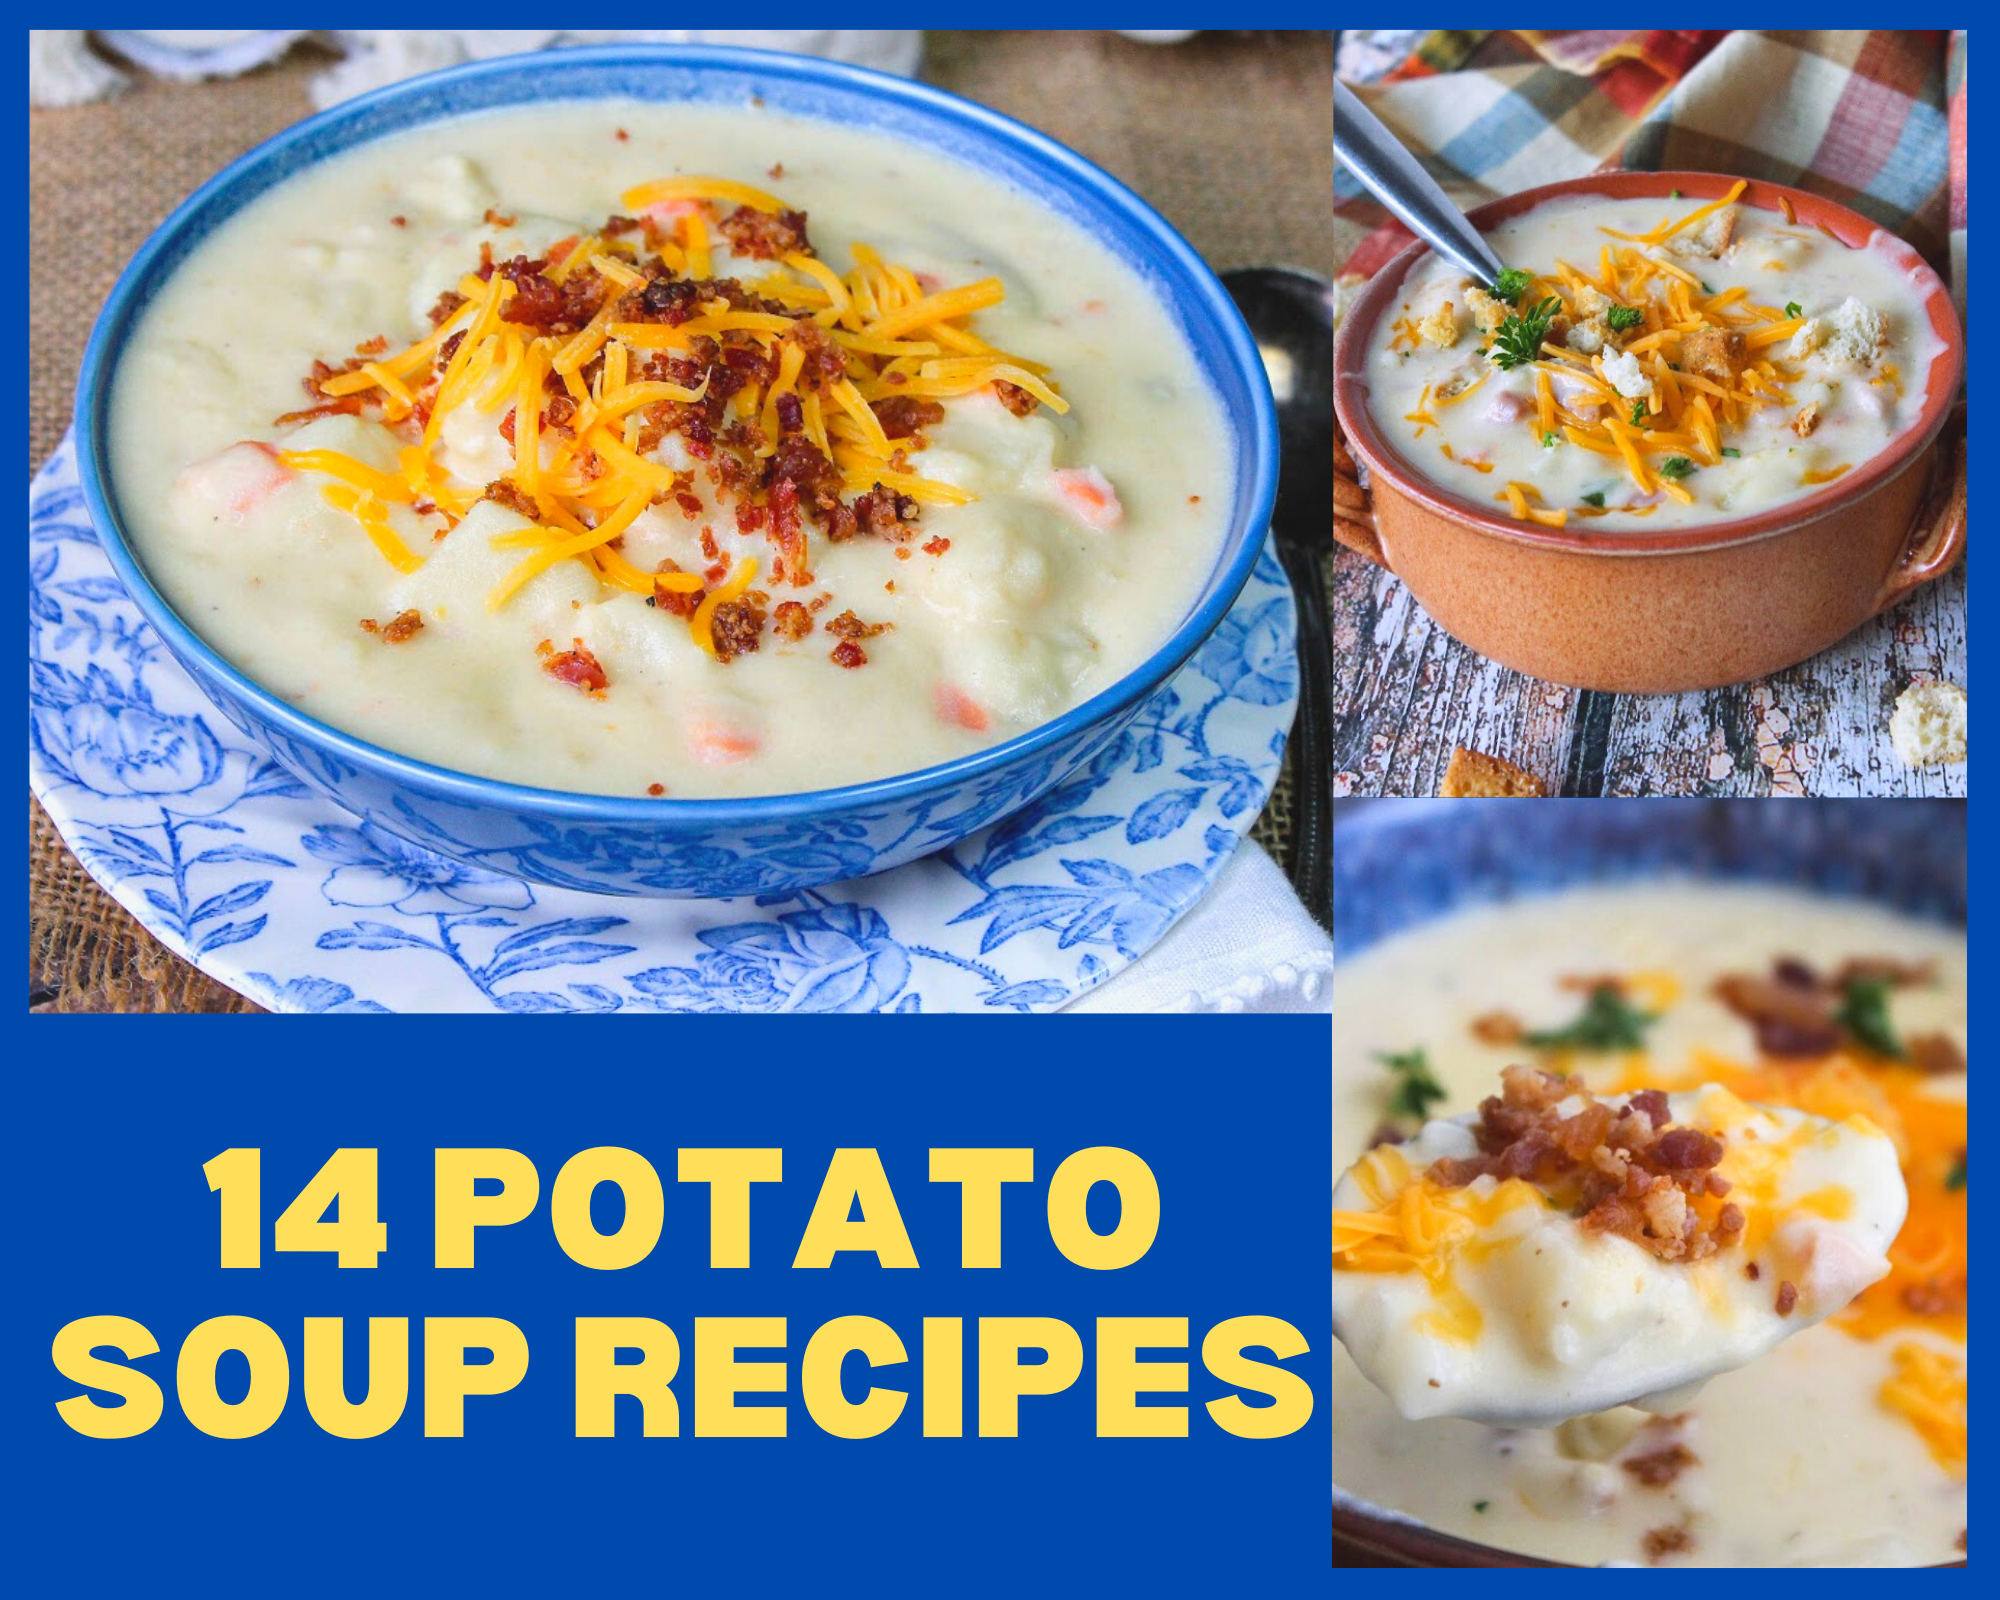 14 Potato soup recipes